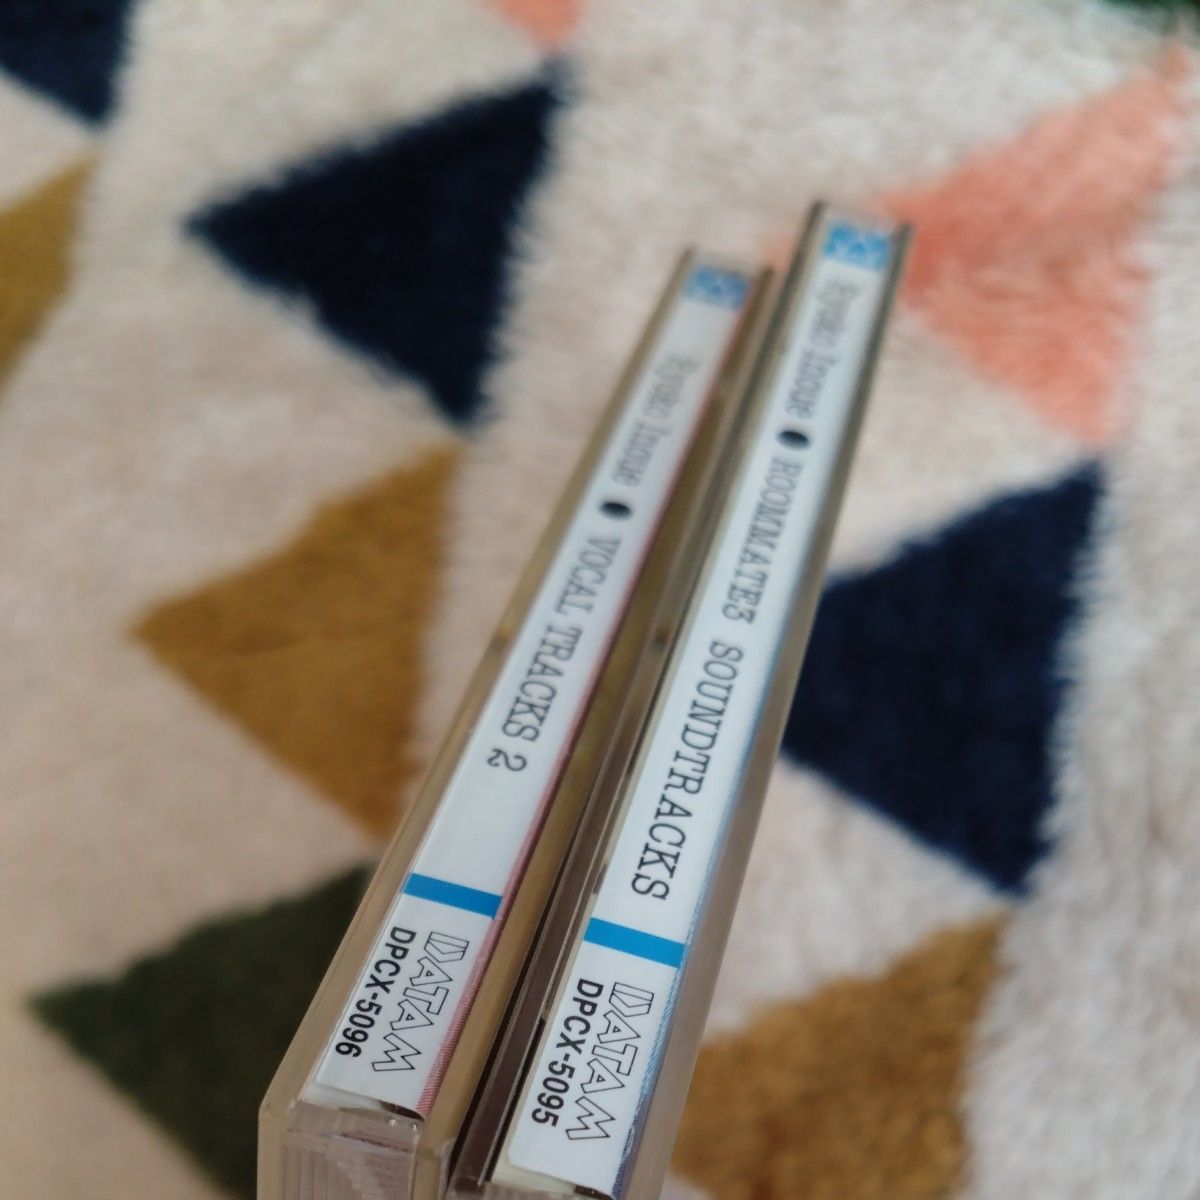 井上涼子 2枚セット「ルームメイト3」 サウンドトラック集 「井上涼子ヴォーカル集2 かたちのない贈り物」